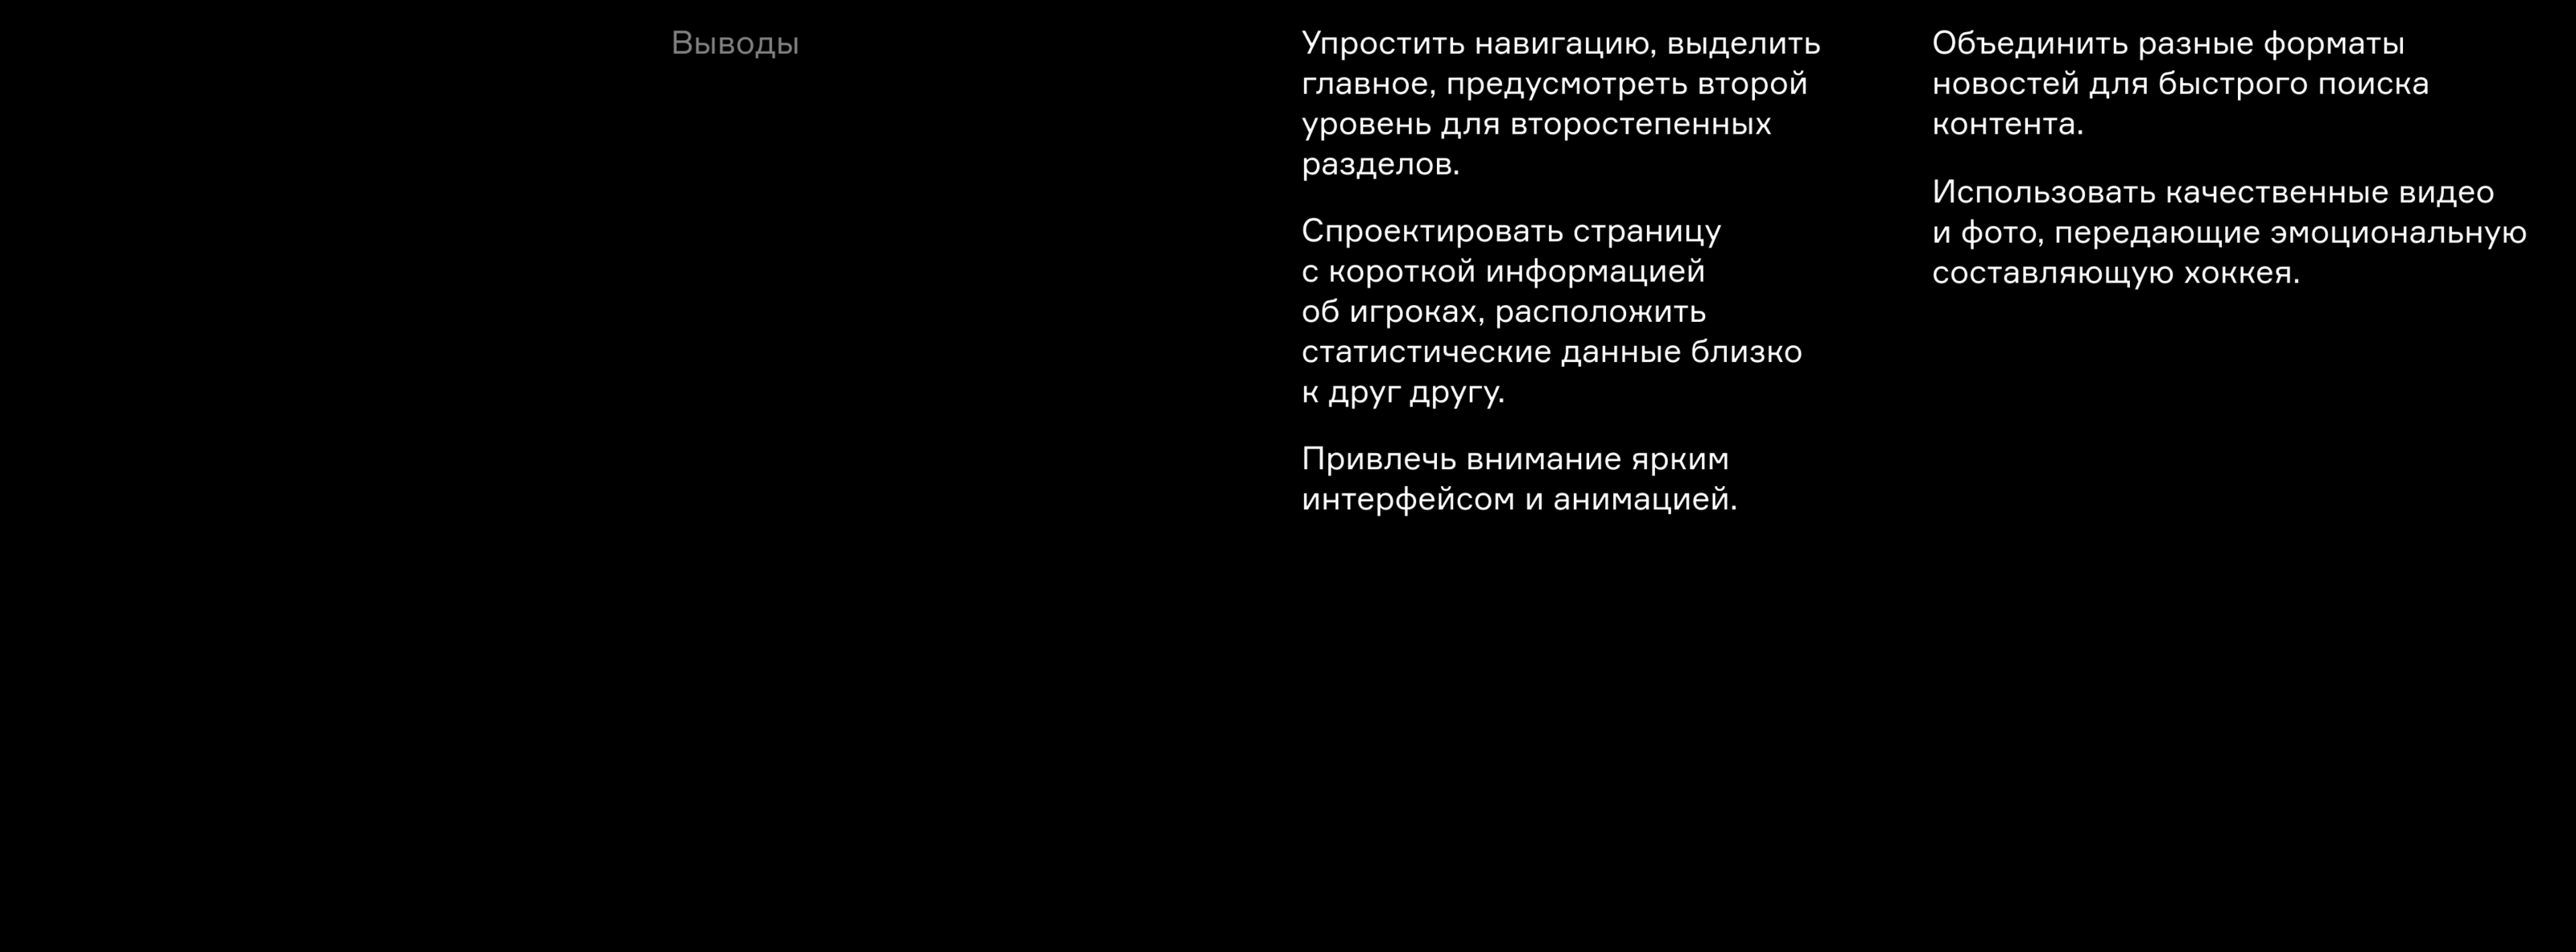 Дизайн основного сайта ХК «Юнисон-Москва» — Изображение №4 — Интерфейсы на Dprofile